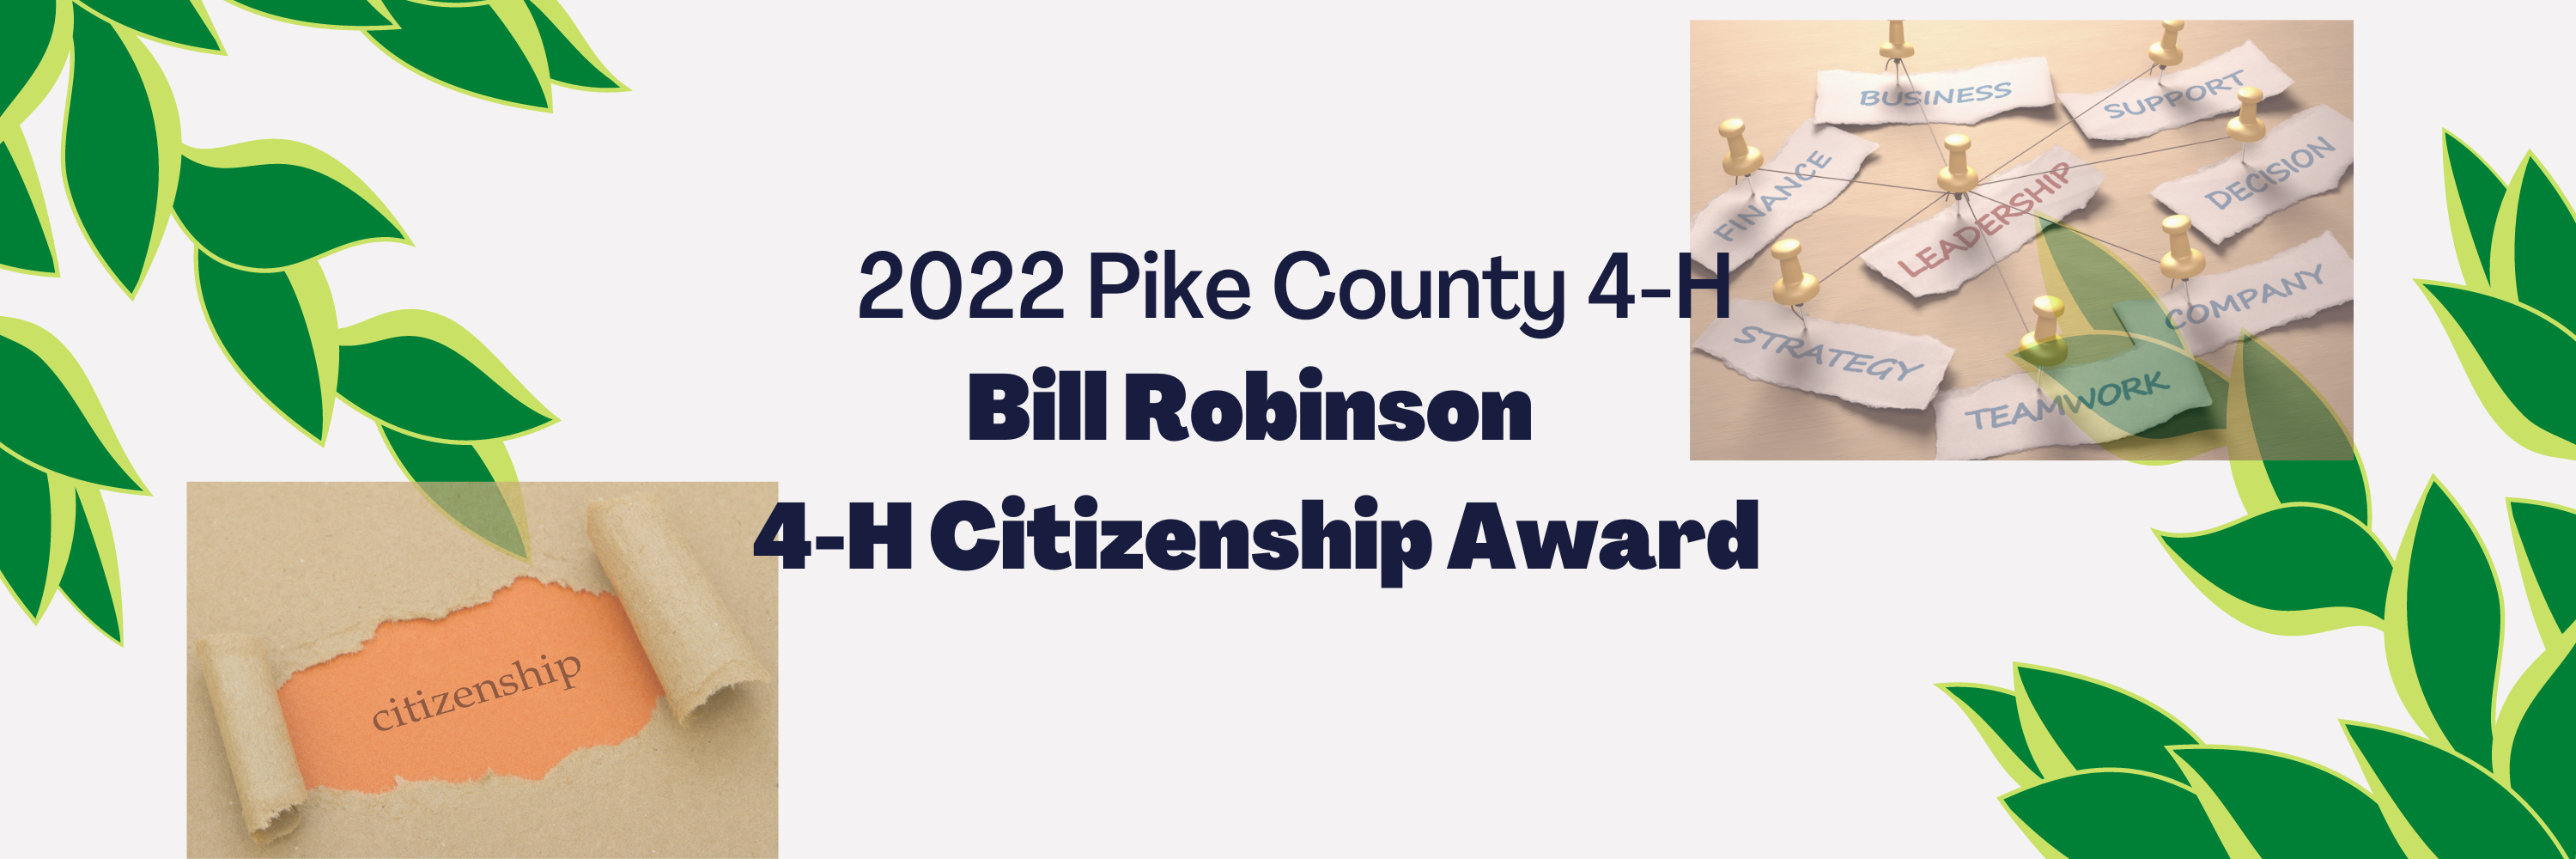 2022 Pike County 4-H Bill Robinson Citizenship Award Information